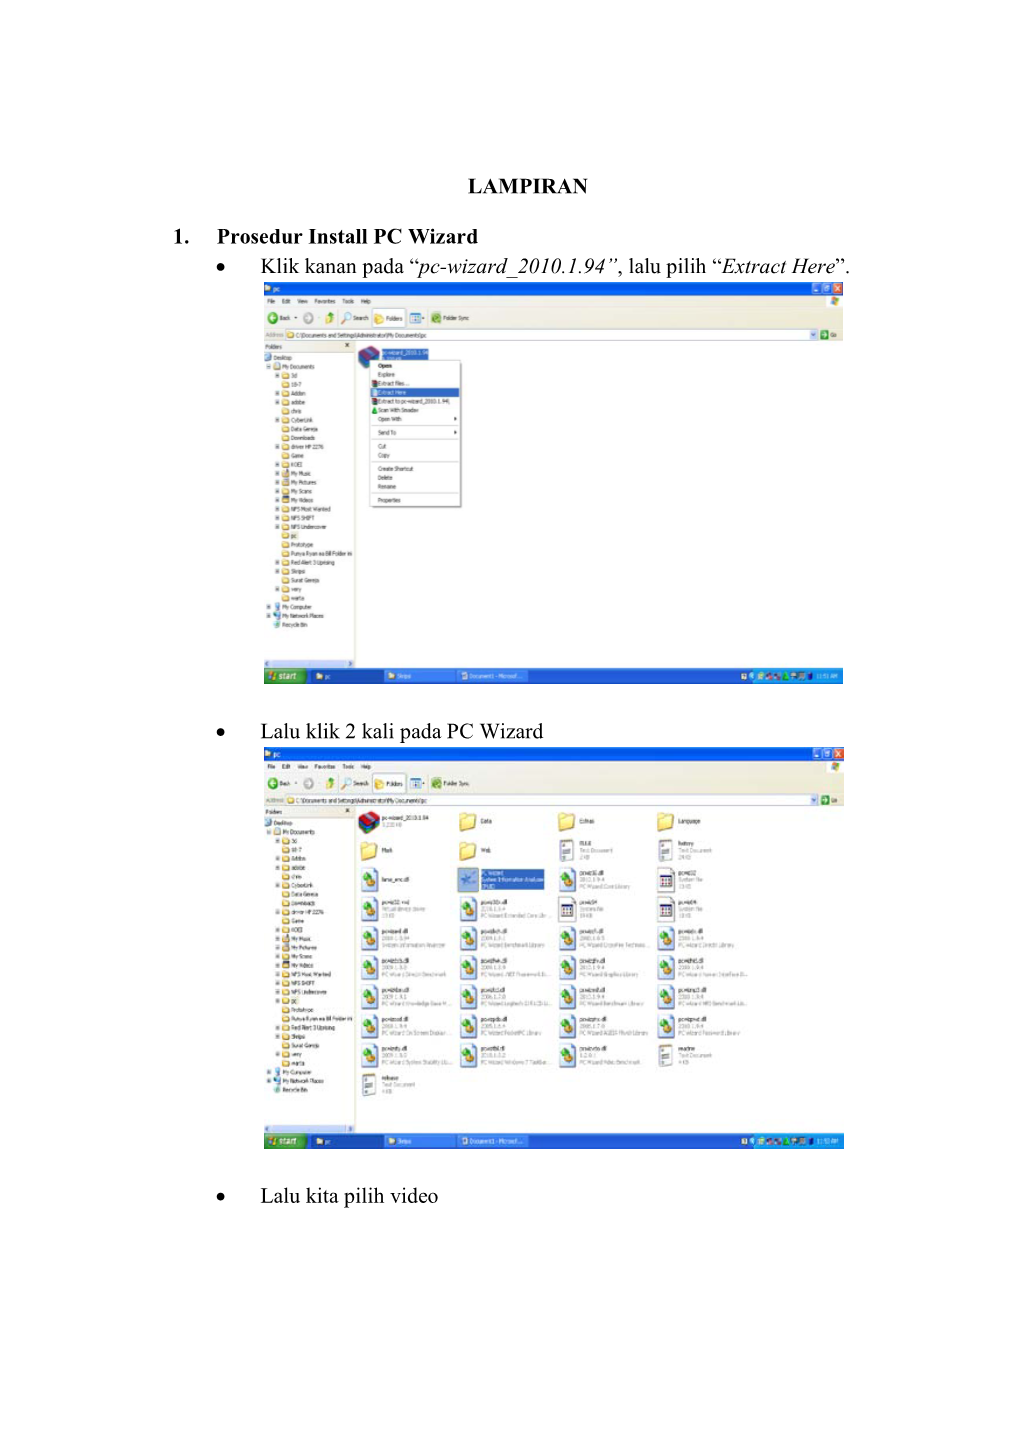 LAMPIRAN 1. Prosedur Install PC Wizard • Klik Kanan Pada “Pc-Wizard 2010.1.94”, Lalu Pilih “Extract Here”. • Lalu Kl